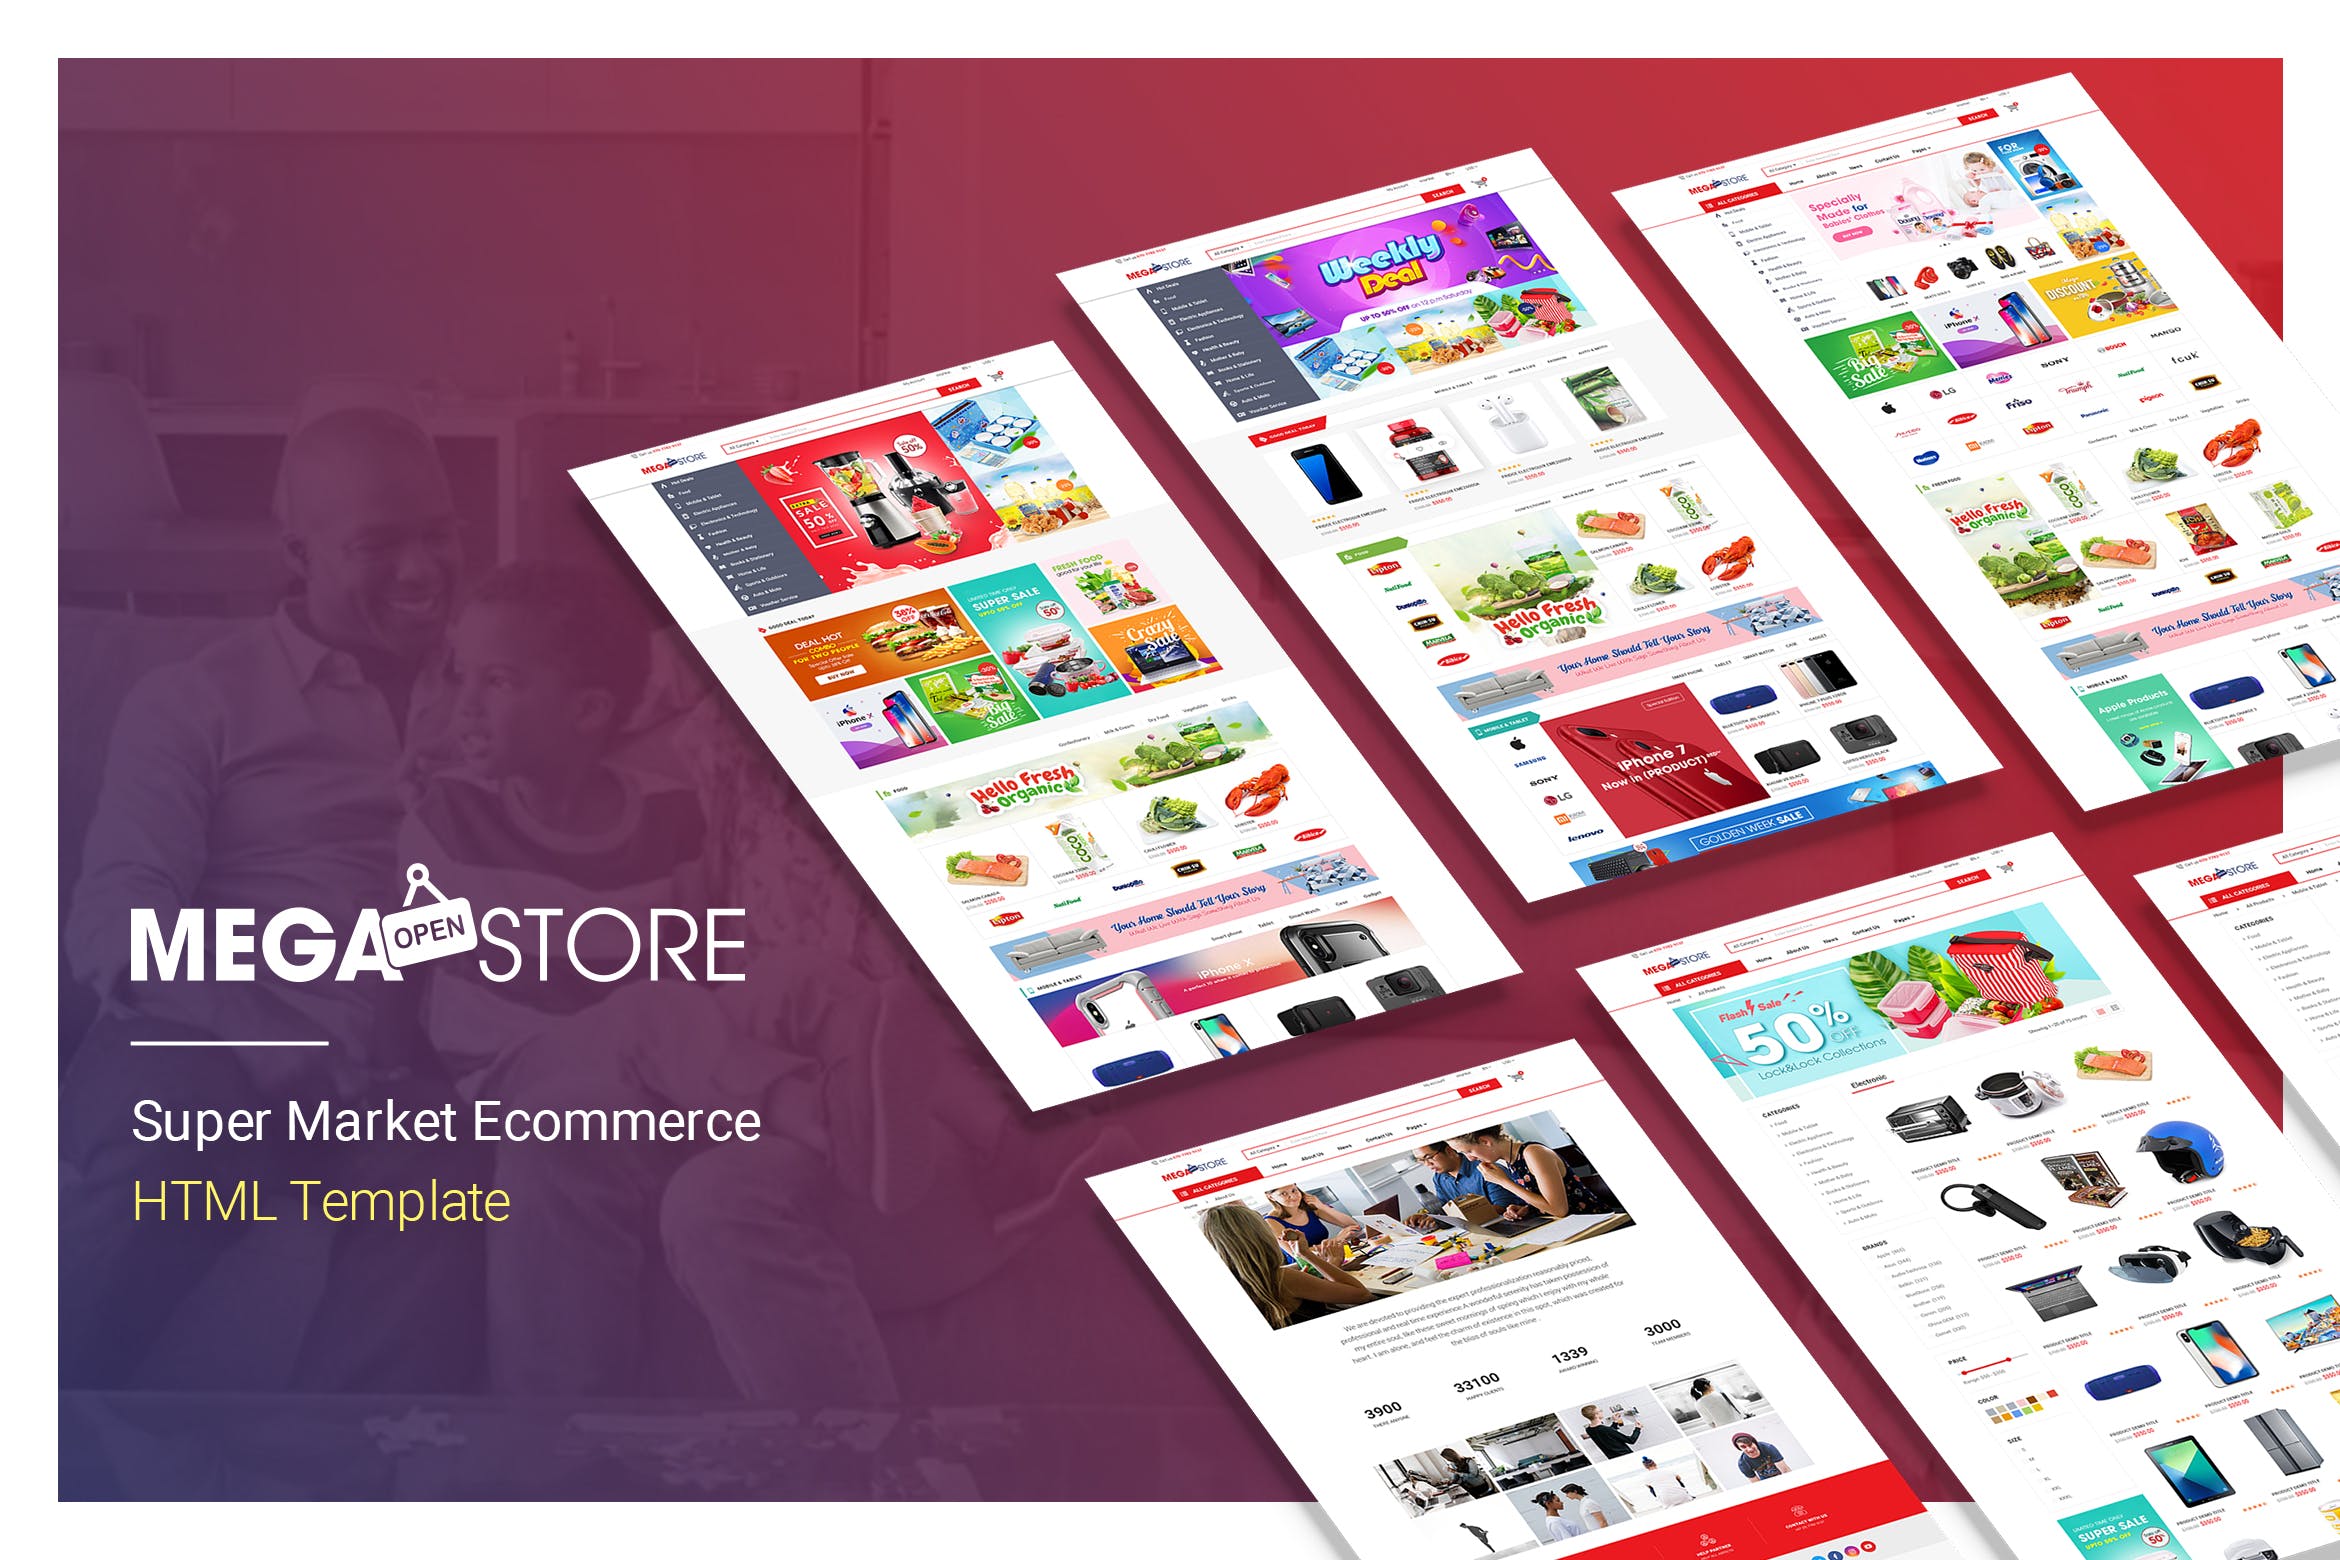 超级市场电子商务HTML网上商城模板第一素材精选 MegaStore | Super Market Ecommerce HTML Template插图